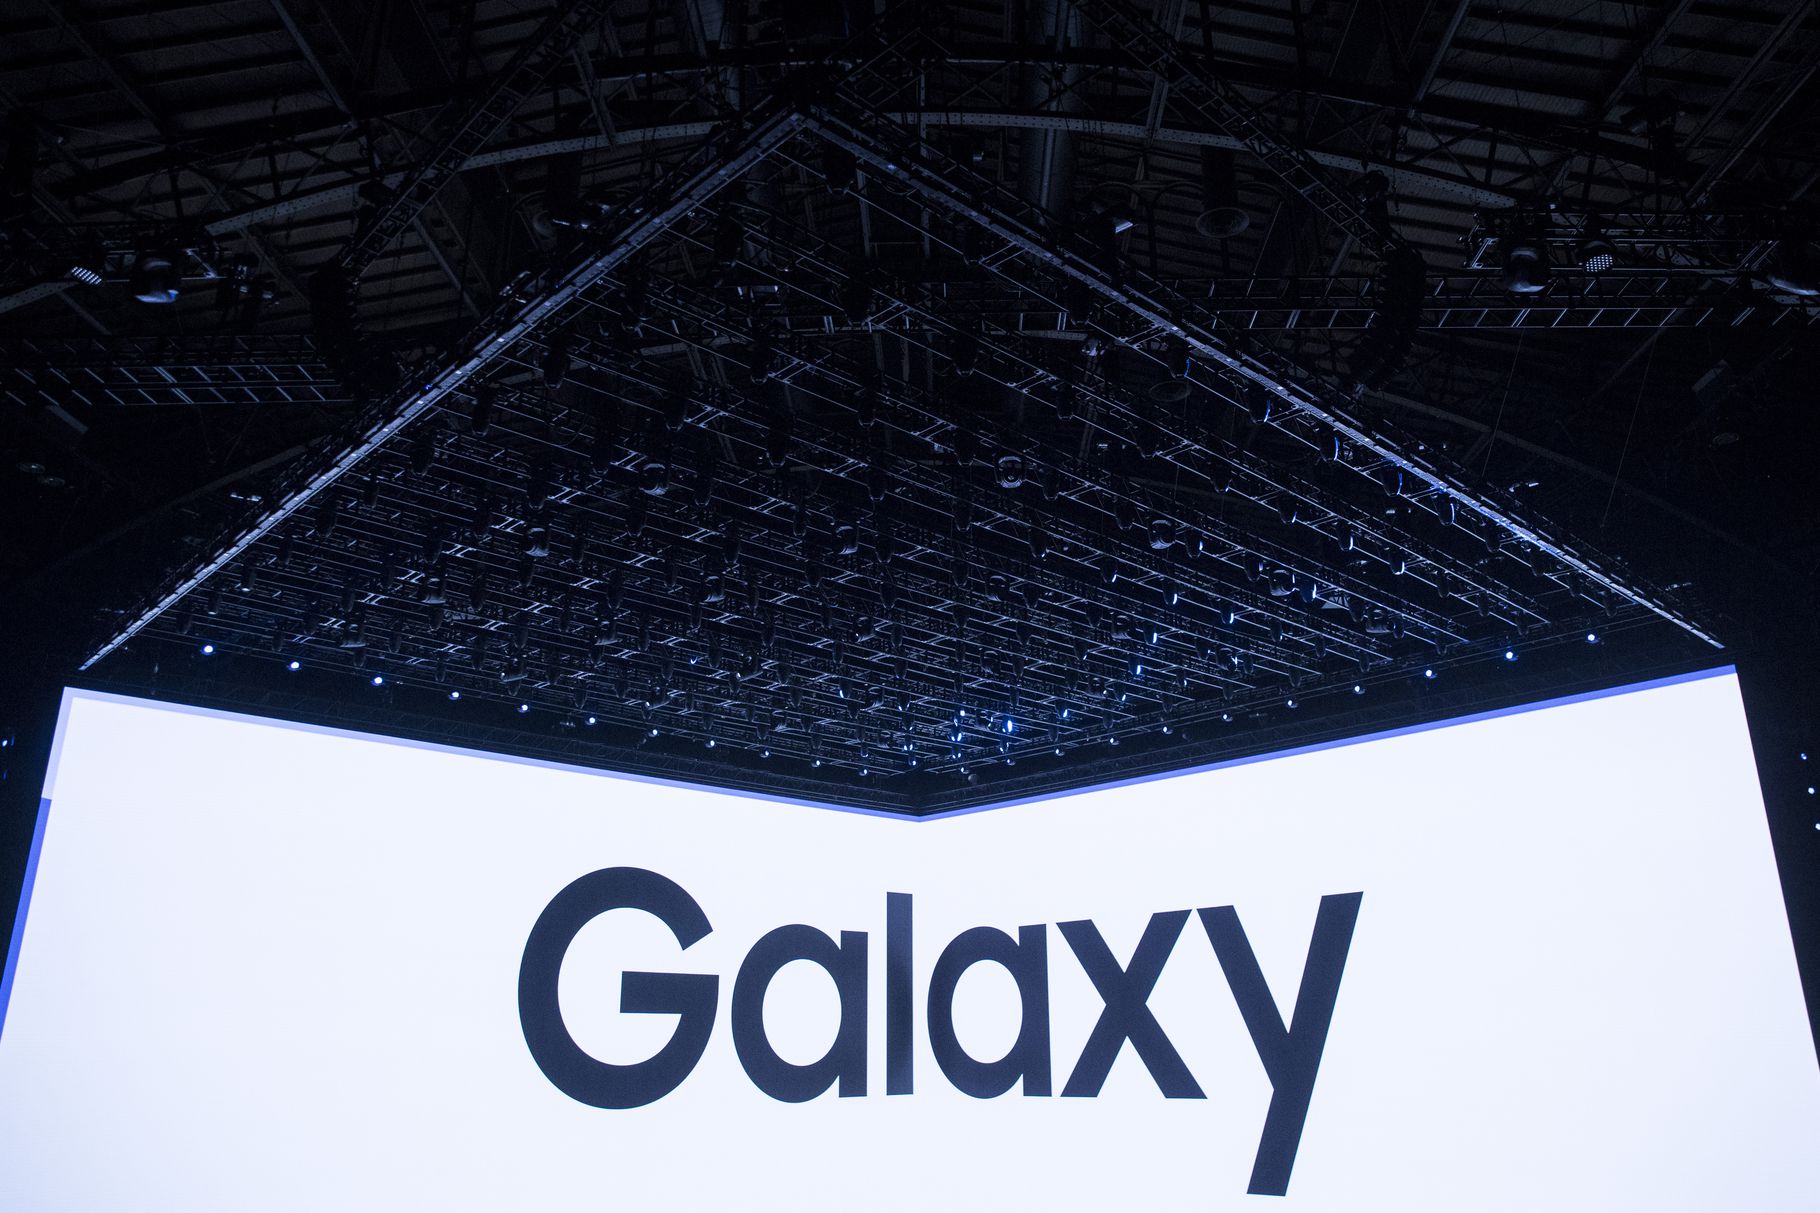 Samsung เตรียมเปิดตัวลำโพงอัจฉริยะราคาไม่ถึงหมื่นพร้อม Galaxy Note 9!